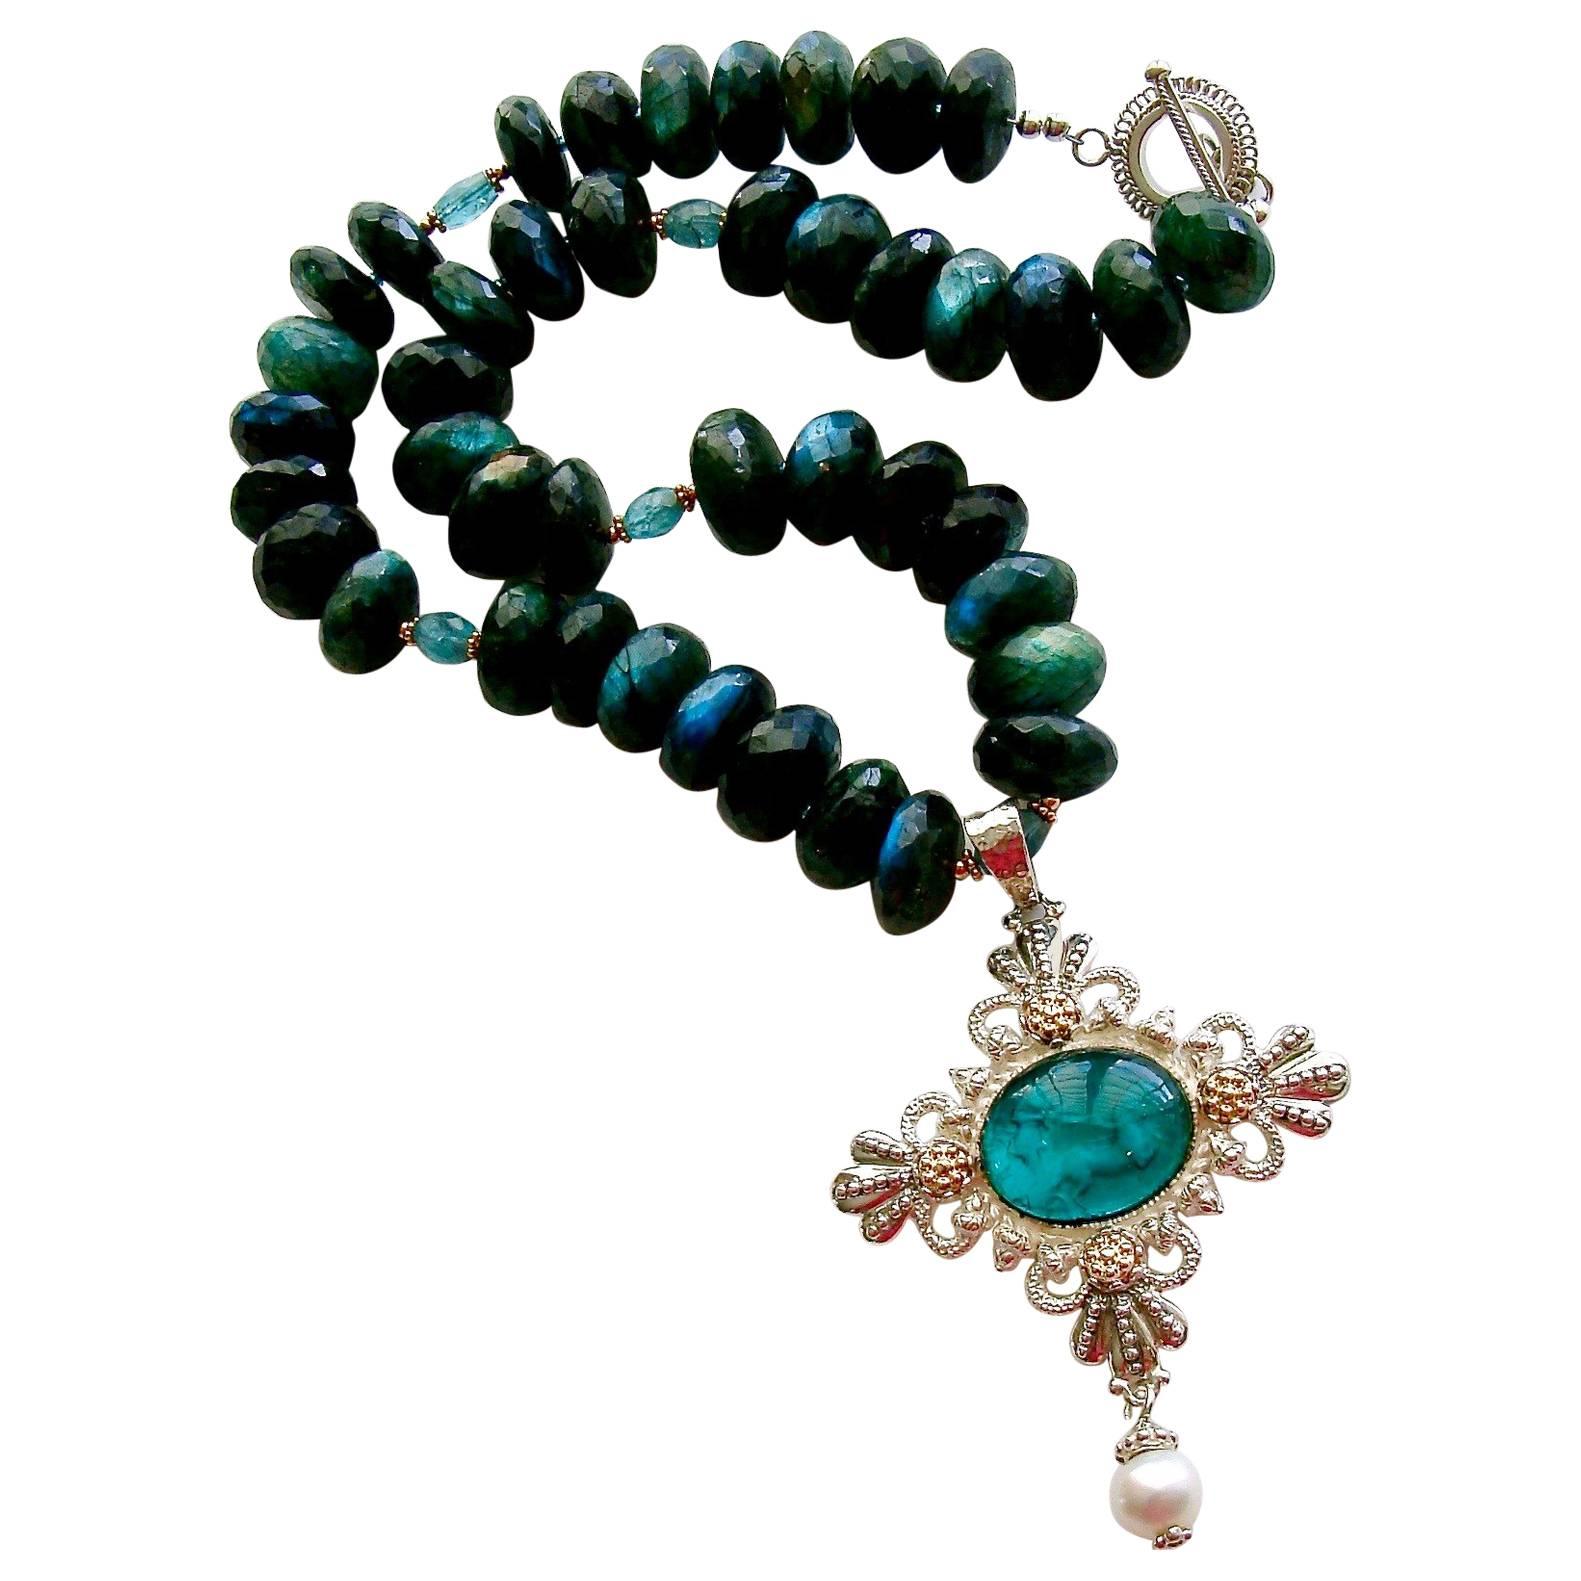 Apatite Green Labradorite Venetian Glass Intaglio Pendant Necklace For Sale